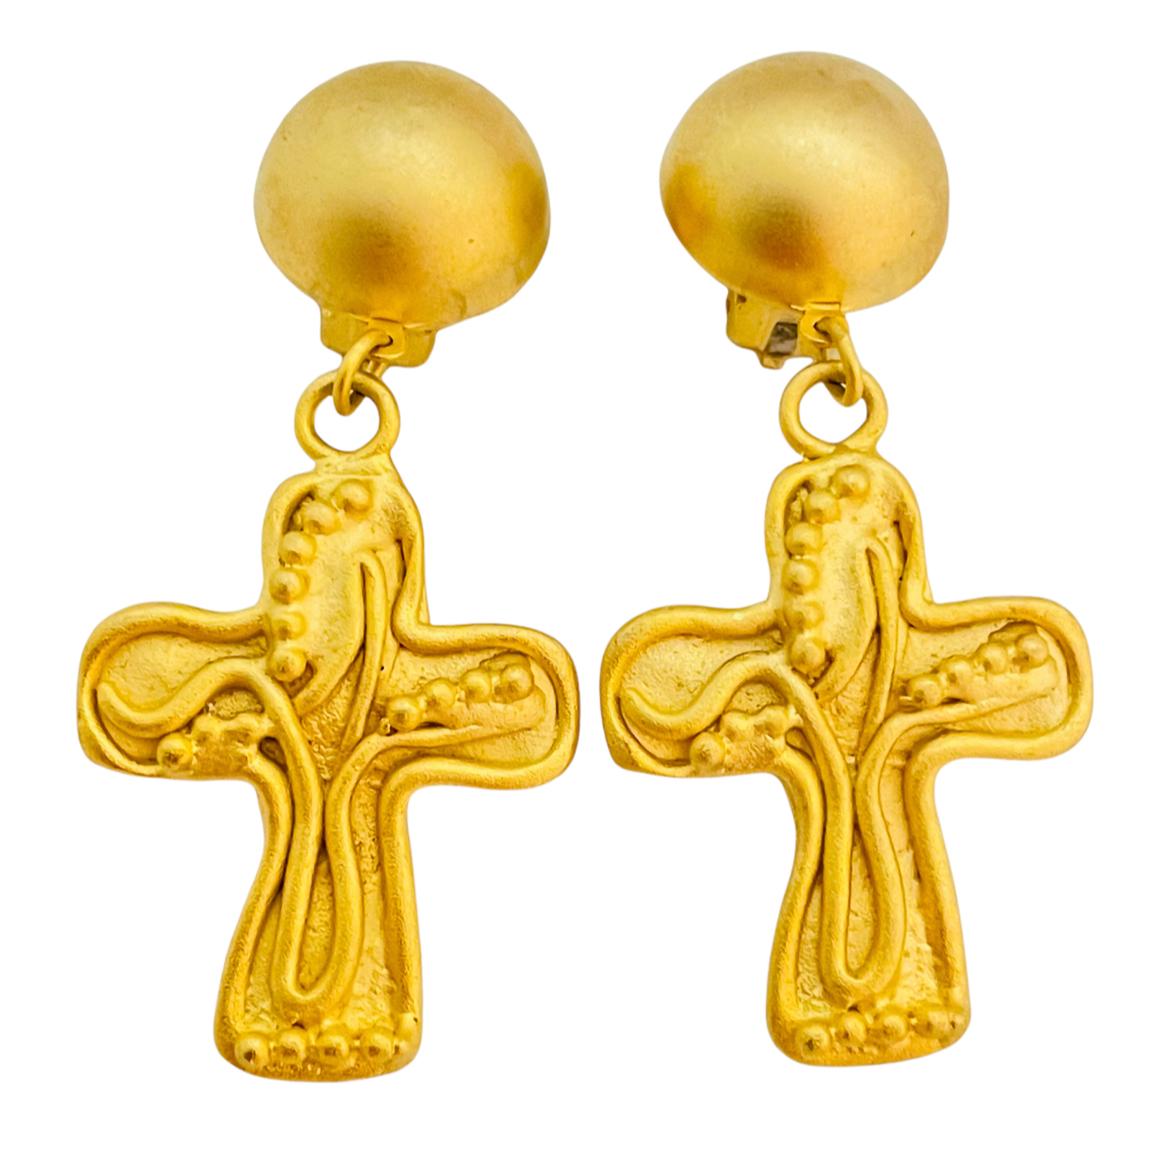 gold cross earrings dangle